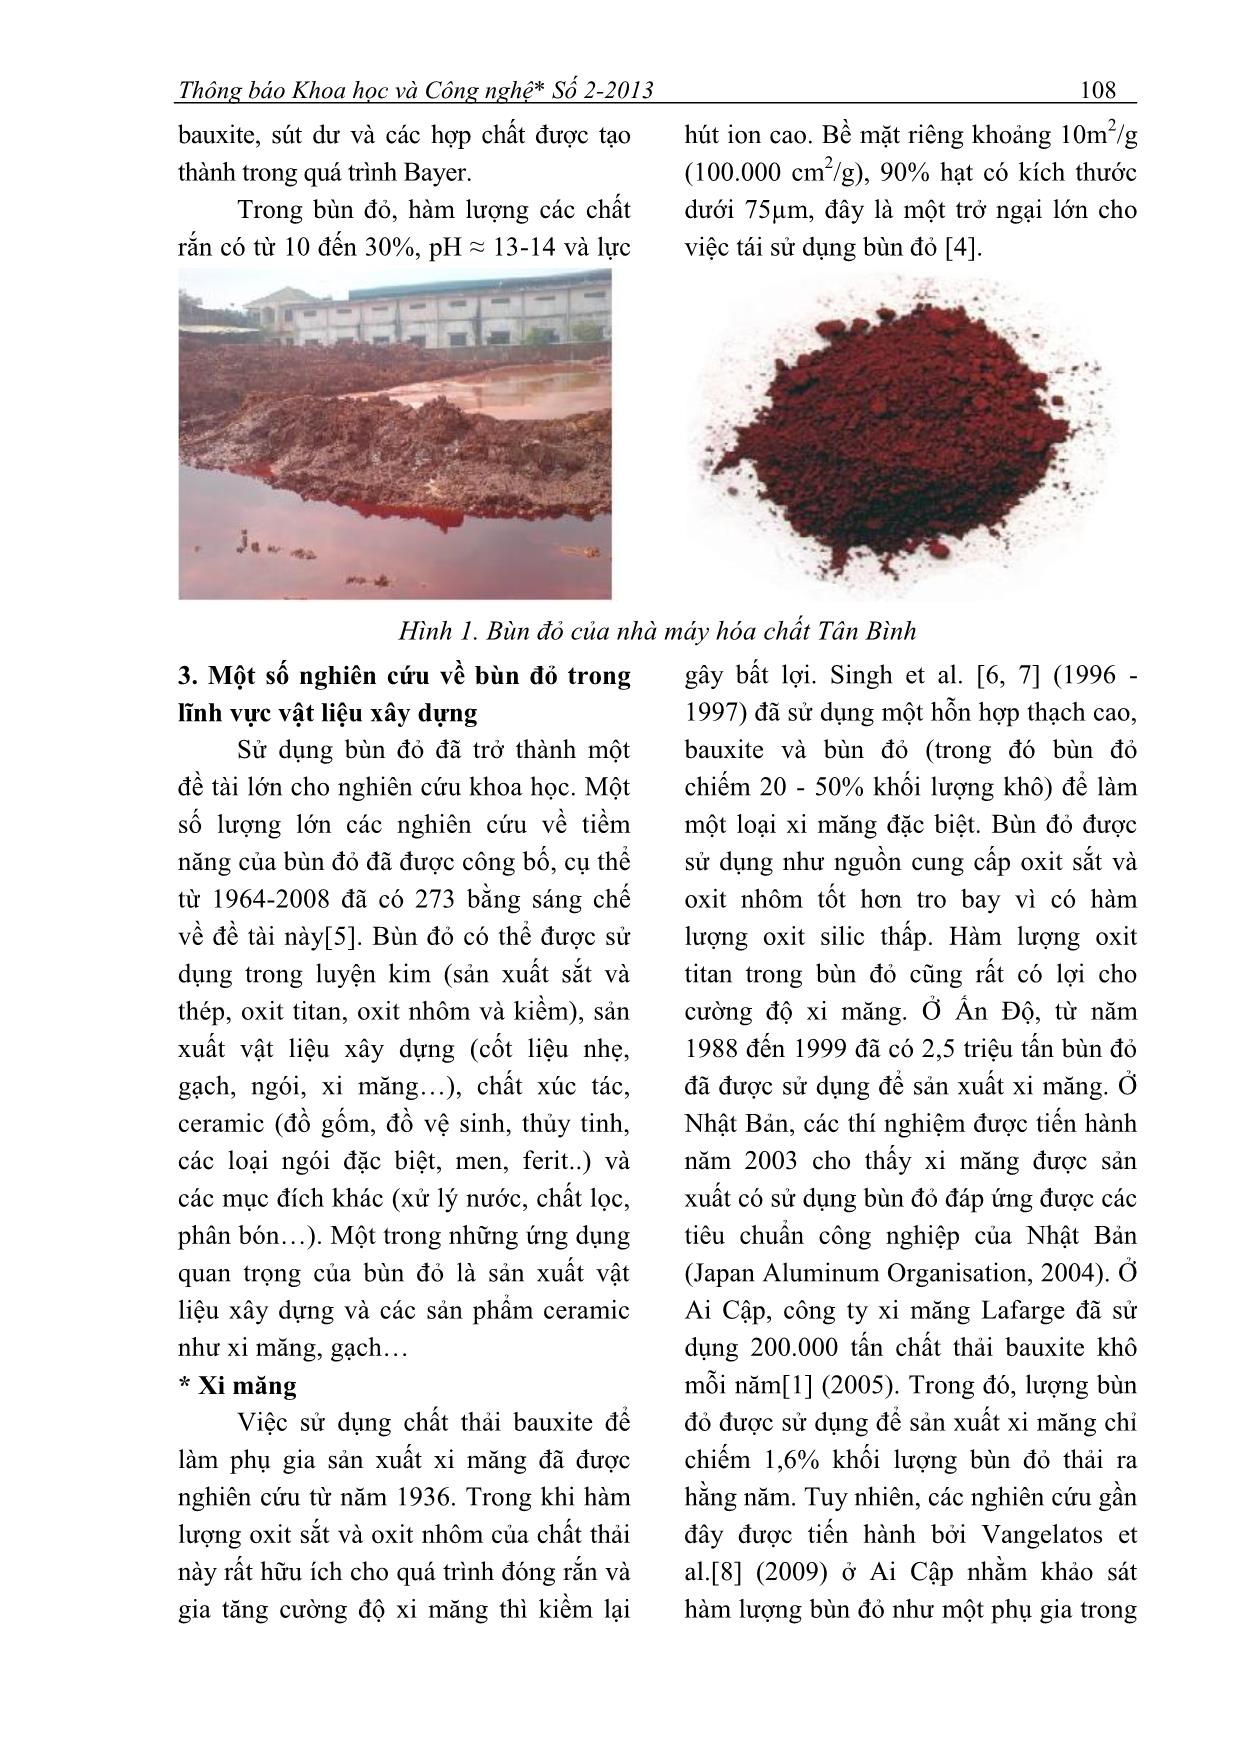 Ứng dụng của bã thải bùn đỏ từ quy trình sản xuất bột nhôm theo công nghệ Bayer trong sản xuất vật liệu xây dựng trang 2